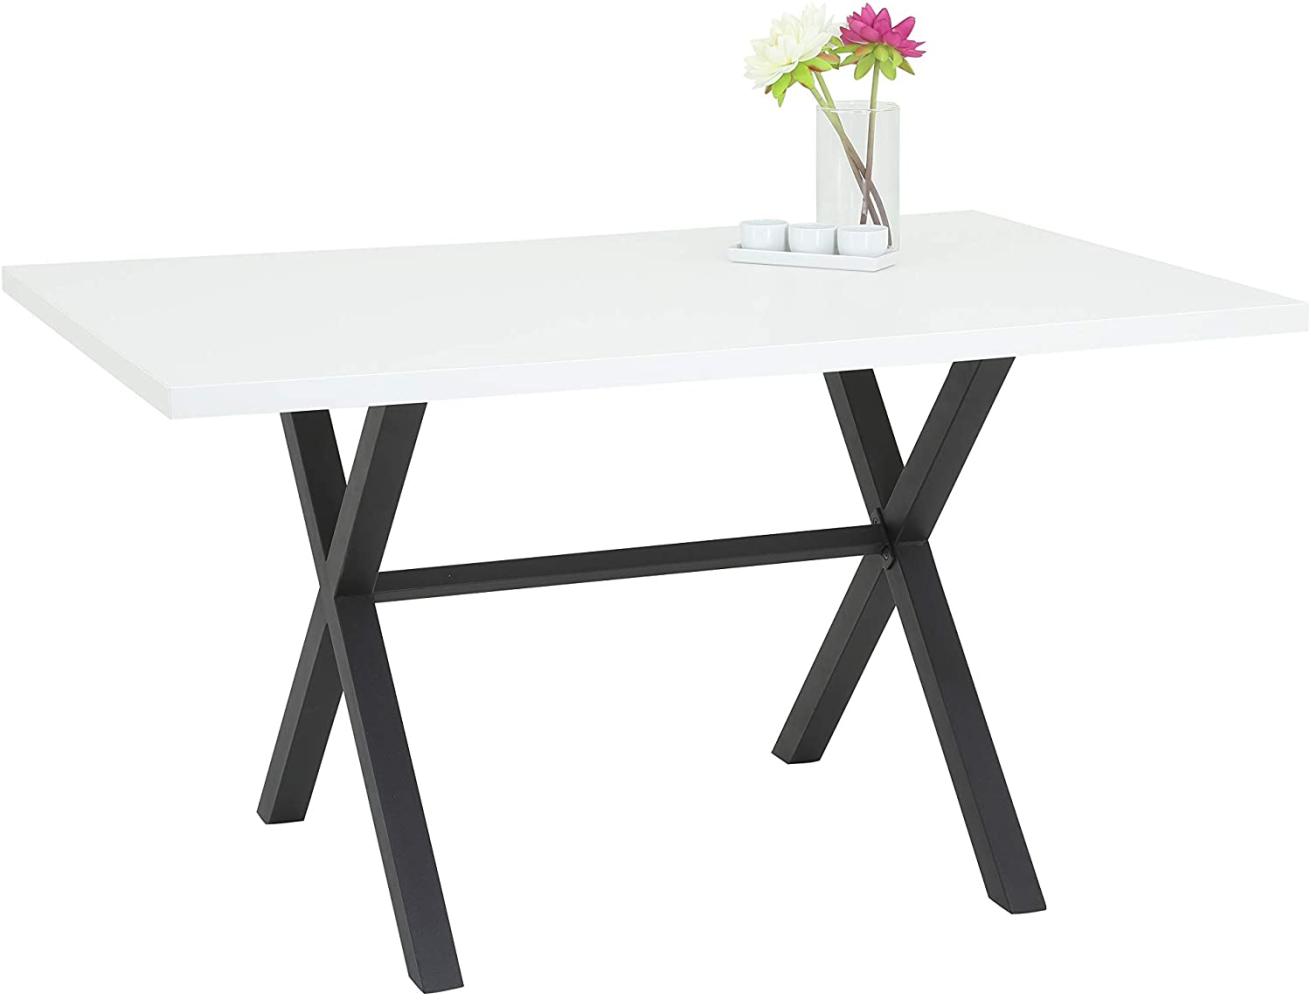 Esstisch BONNY Tisch weiß und Metall anthrazit Bild 1